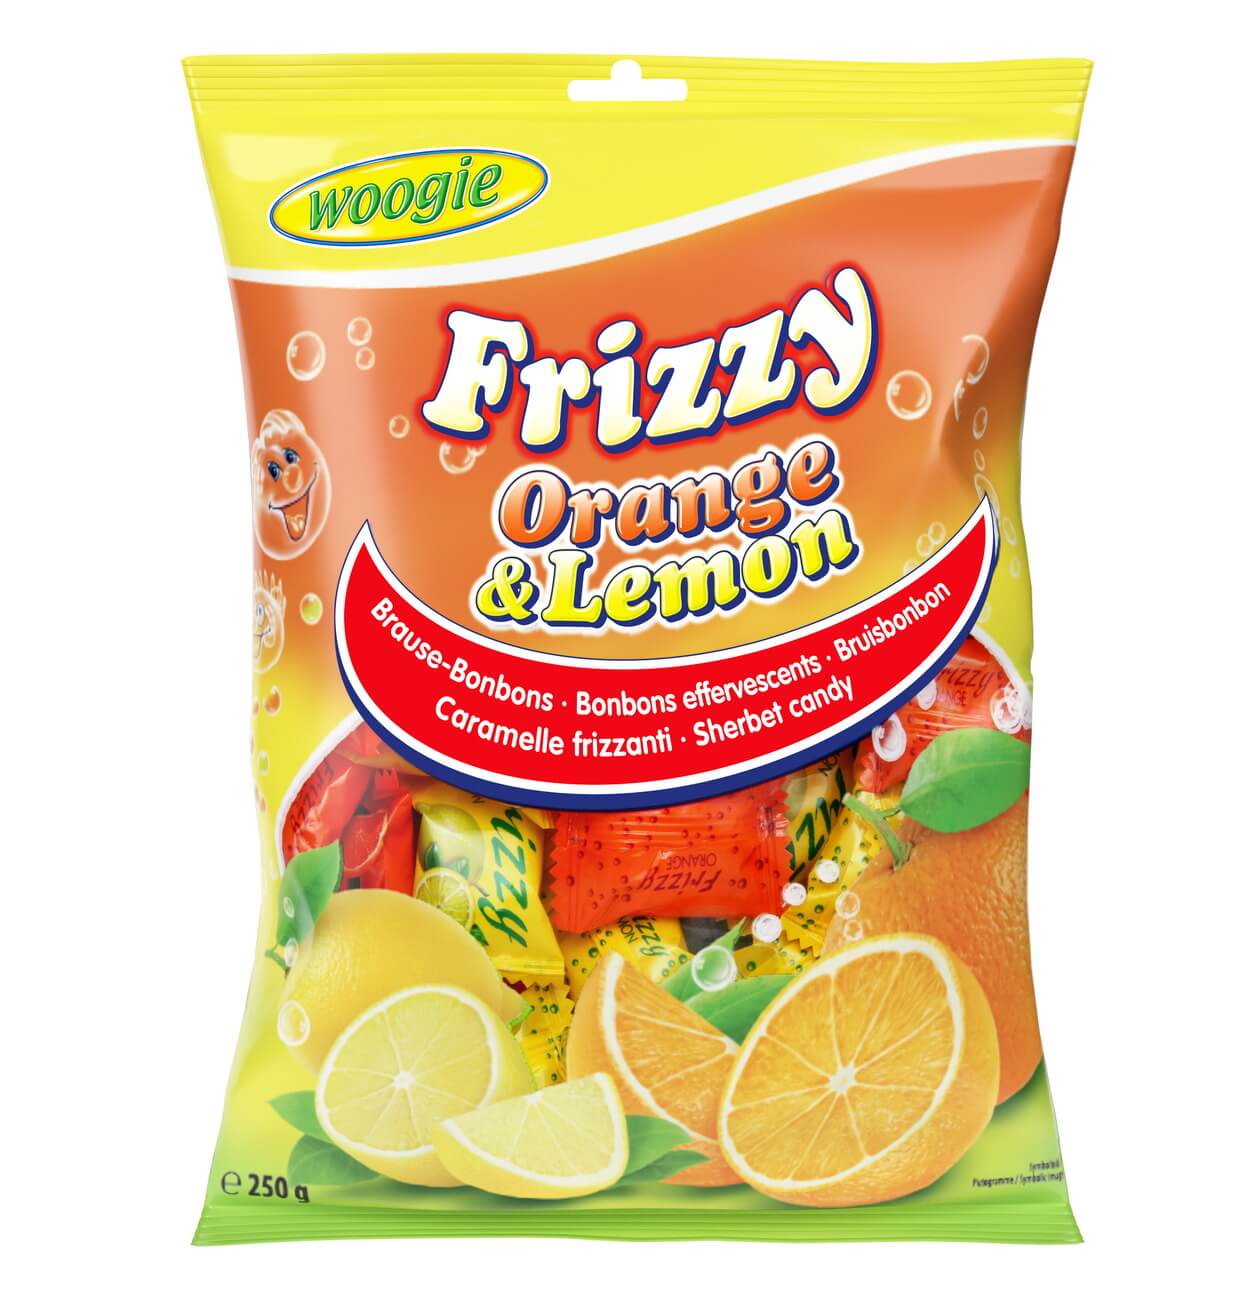 Läs mer om Woogie Frizzy Orange & Lemon 250g